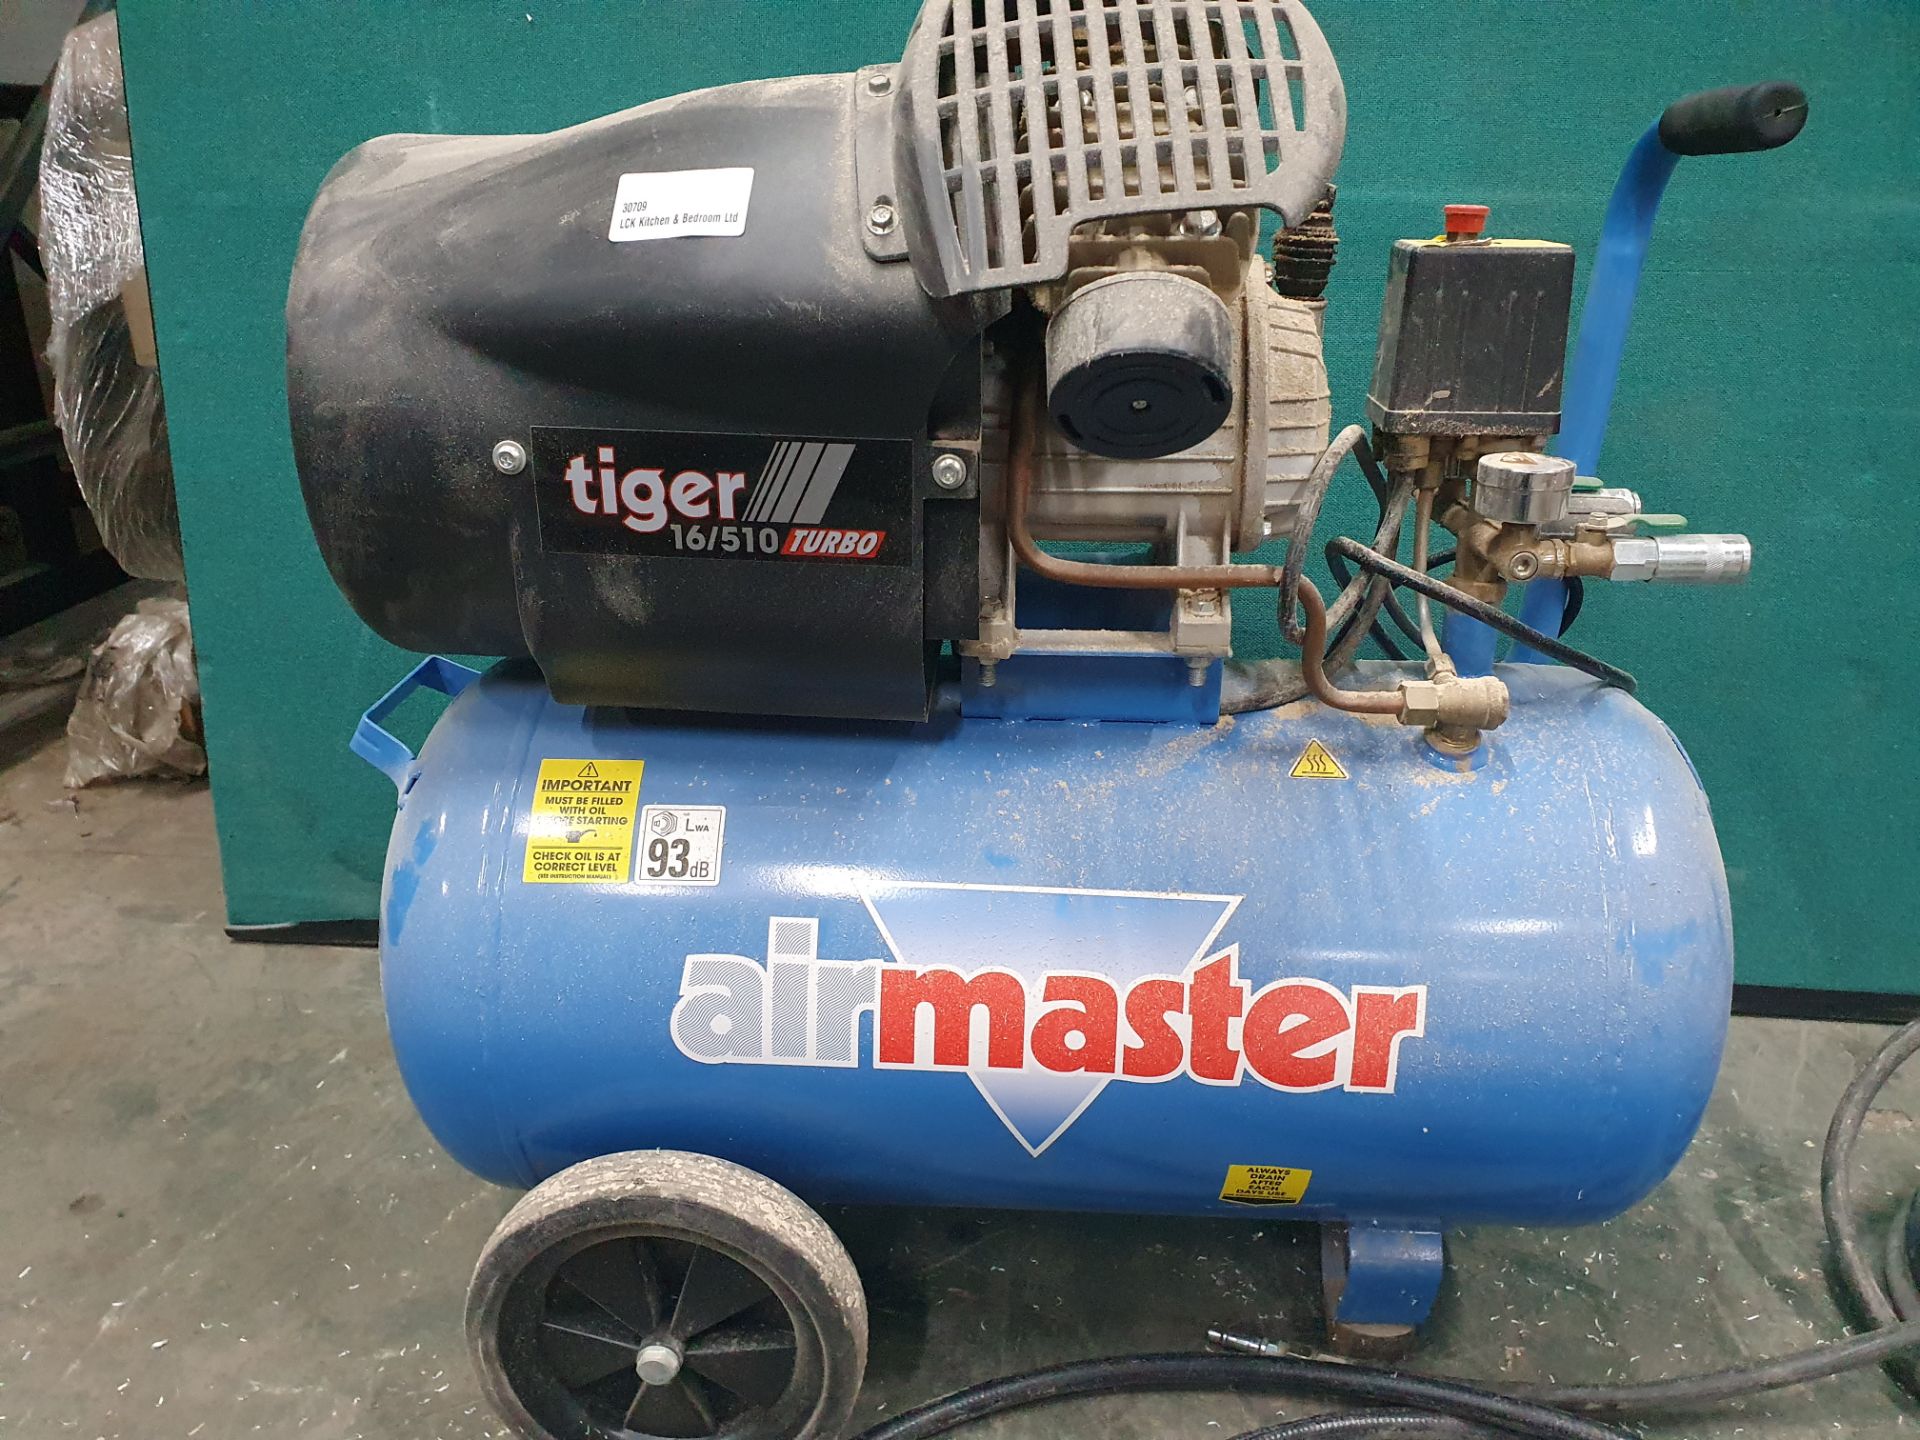 Airmaster Mobile Compressor